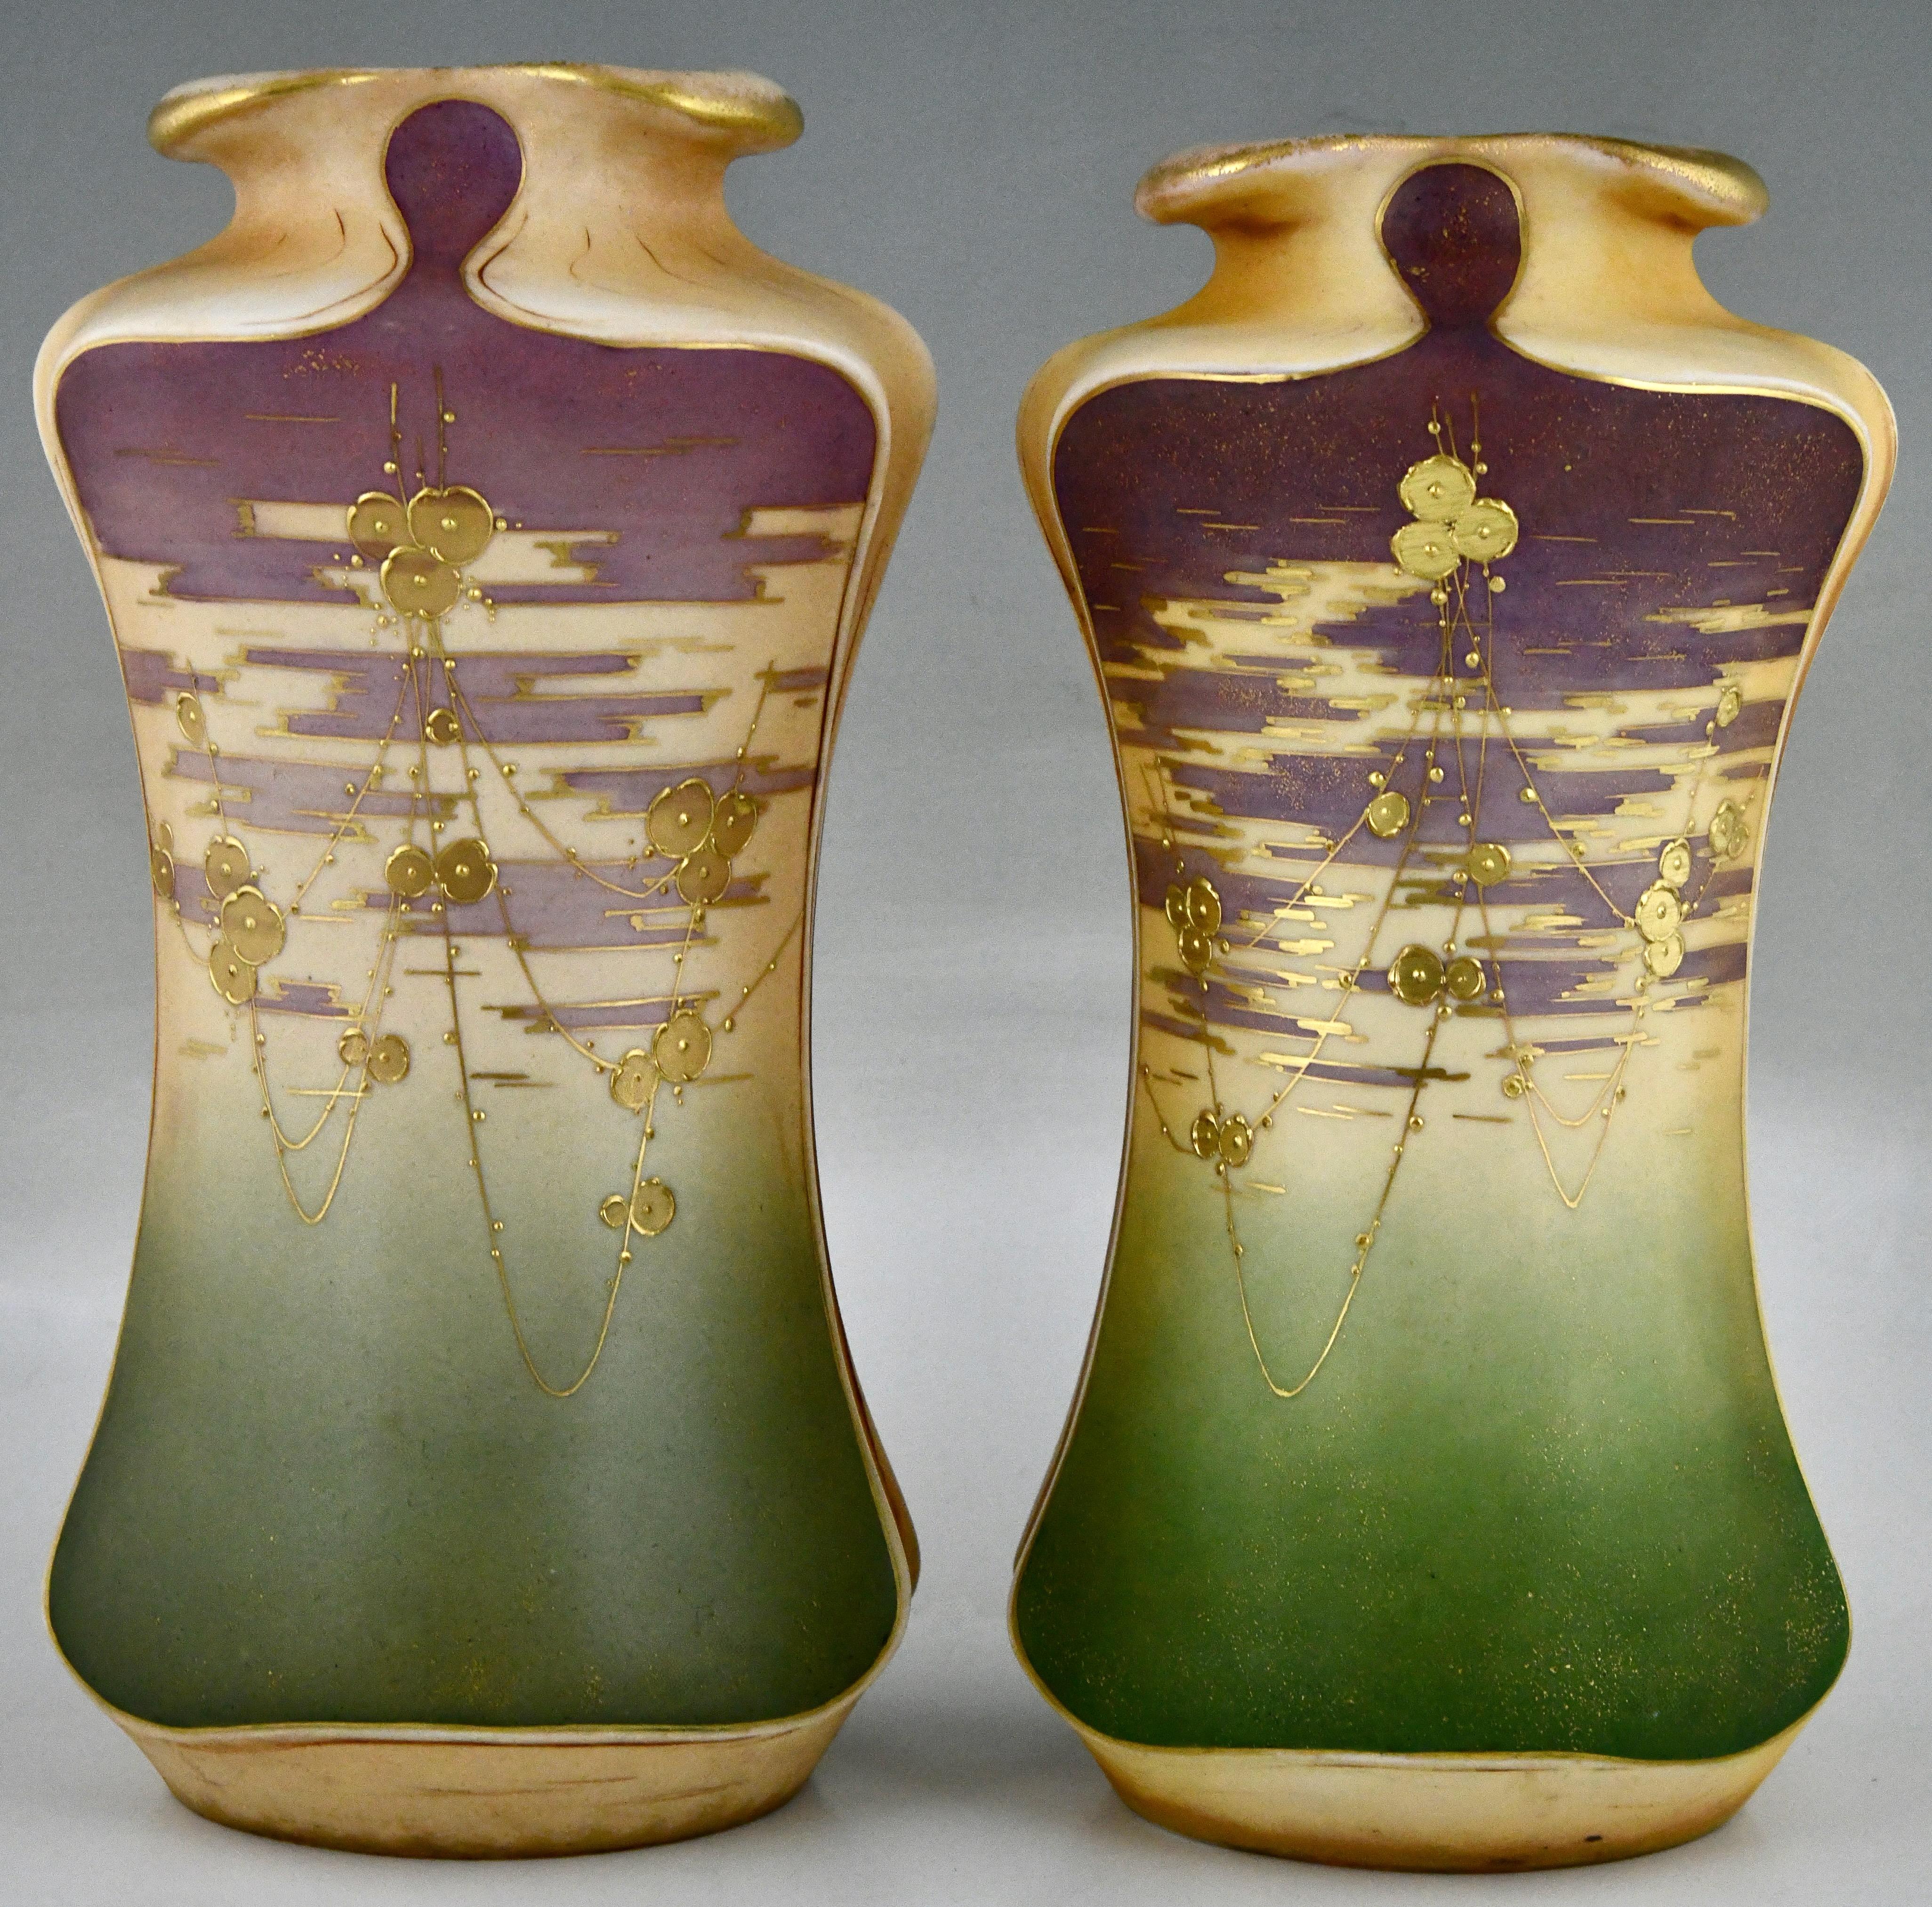 Austrian Art Nouveau ceramic vases with gilt flowers by Turn Teplitz Amphora Austria 1900 For Sale